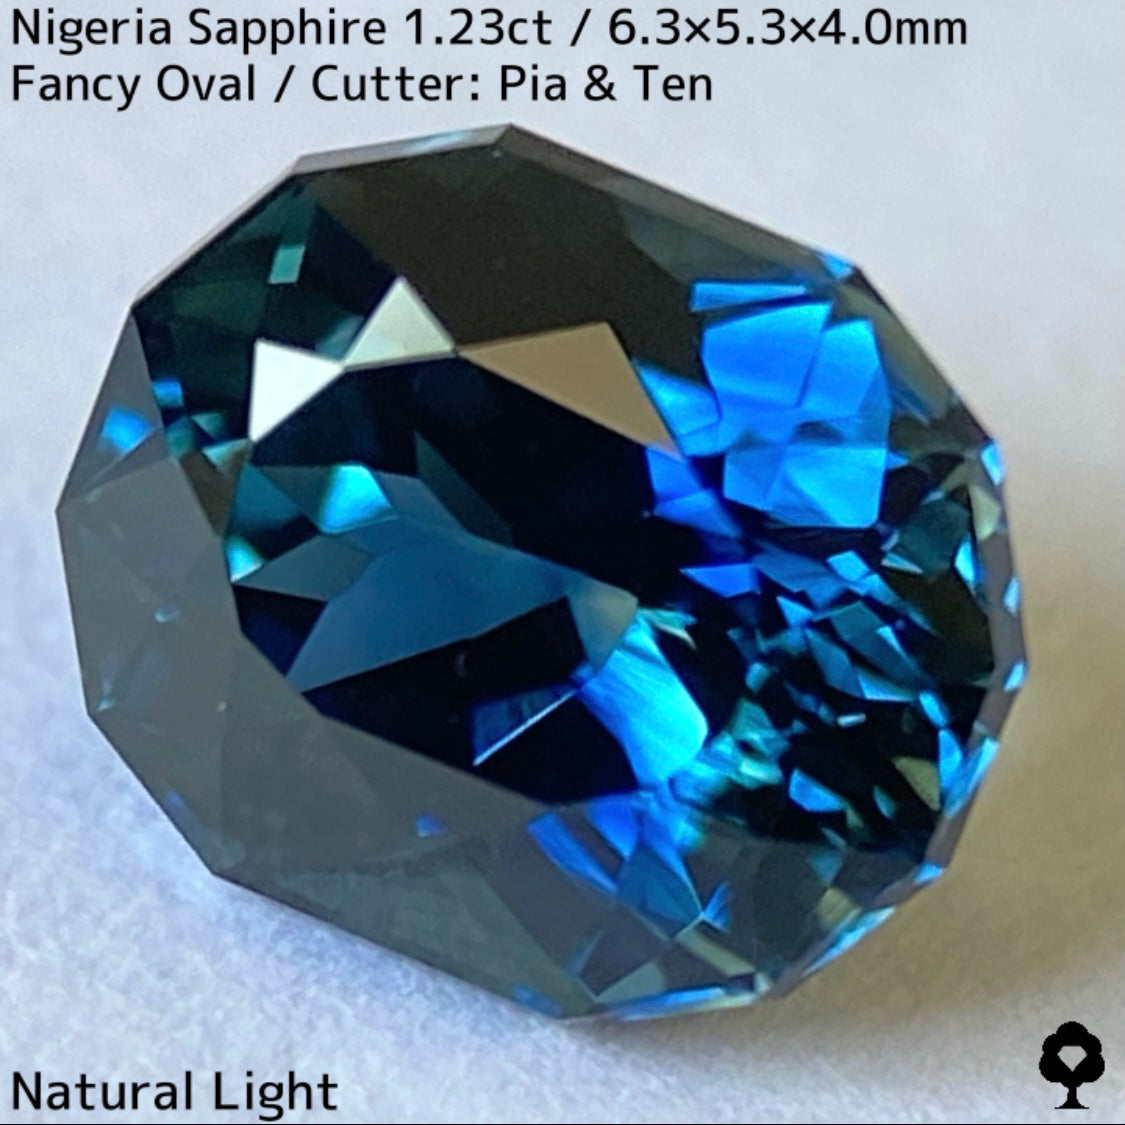 ナイジェリア産サファイア1.23ct★コーンフラワーブルーとティールブルーが同時に楽しめる贅沢な超絶美色美結晶